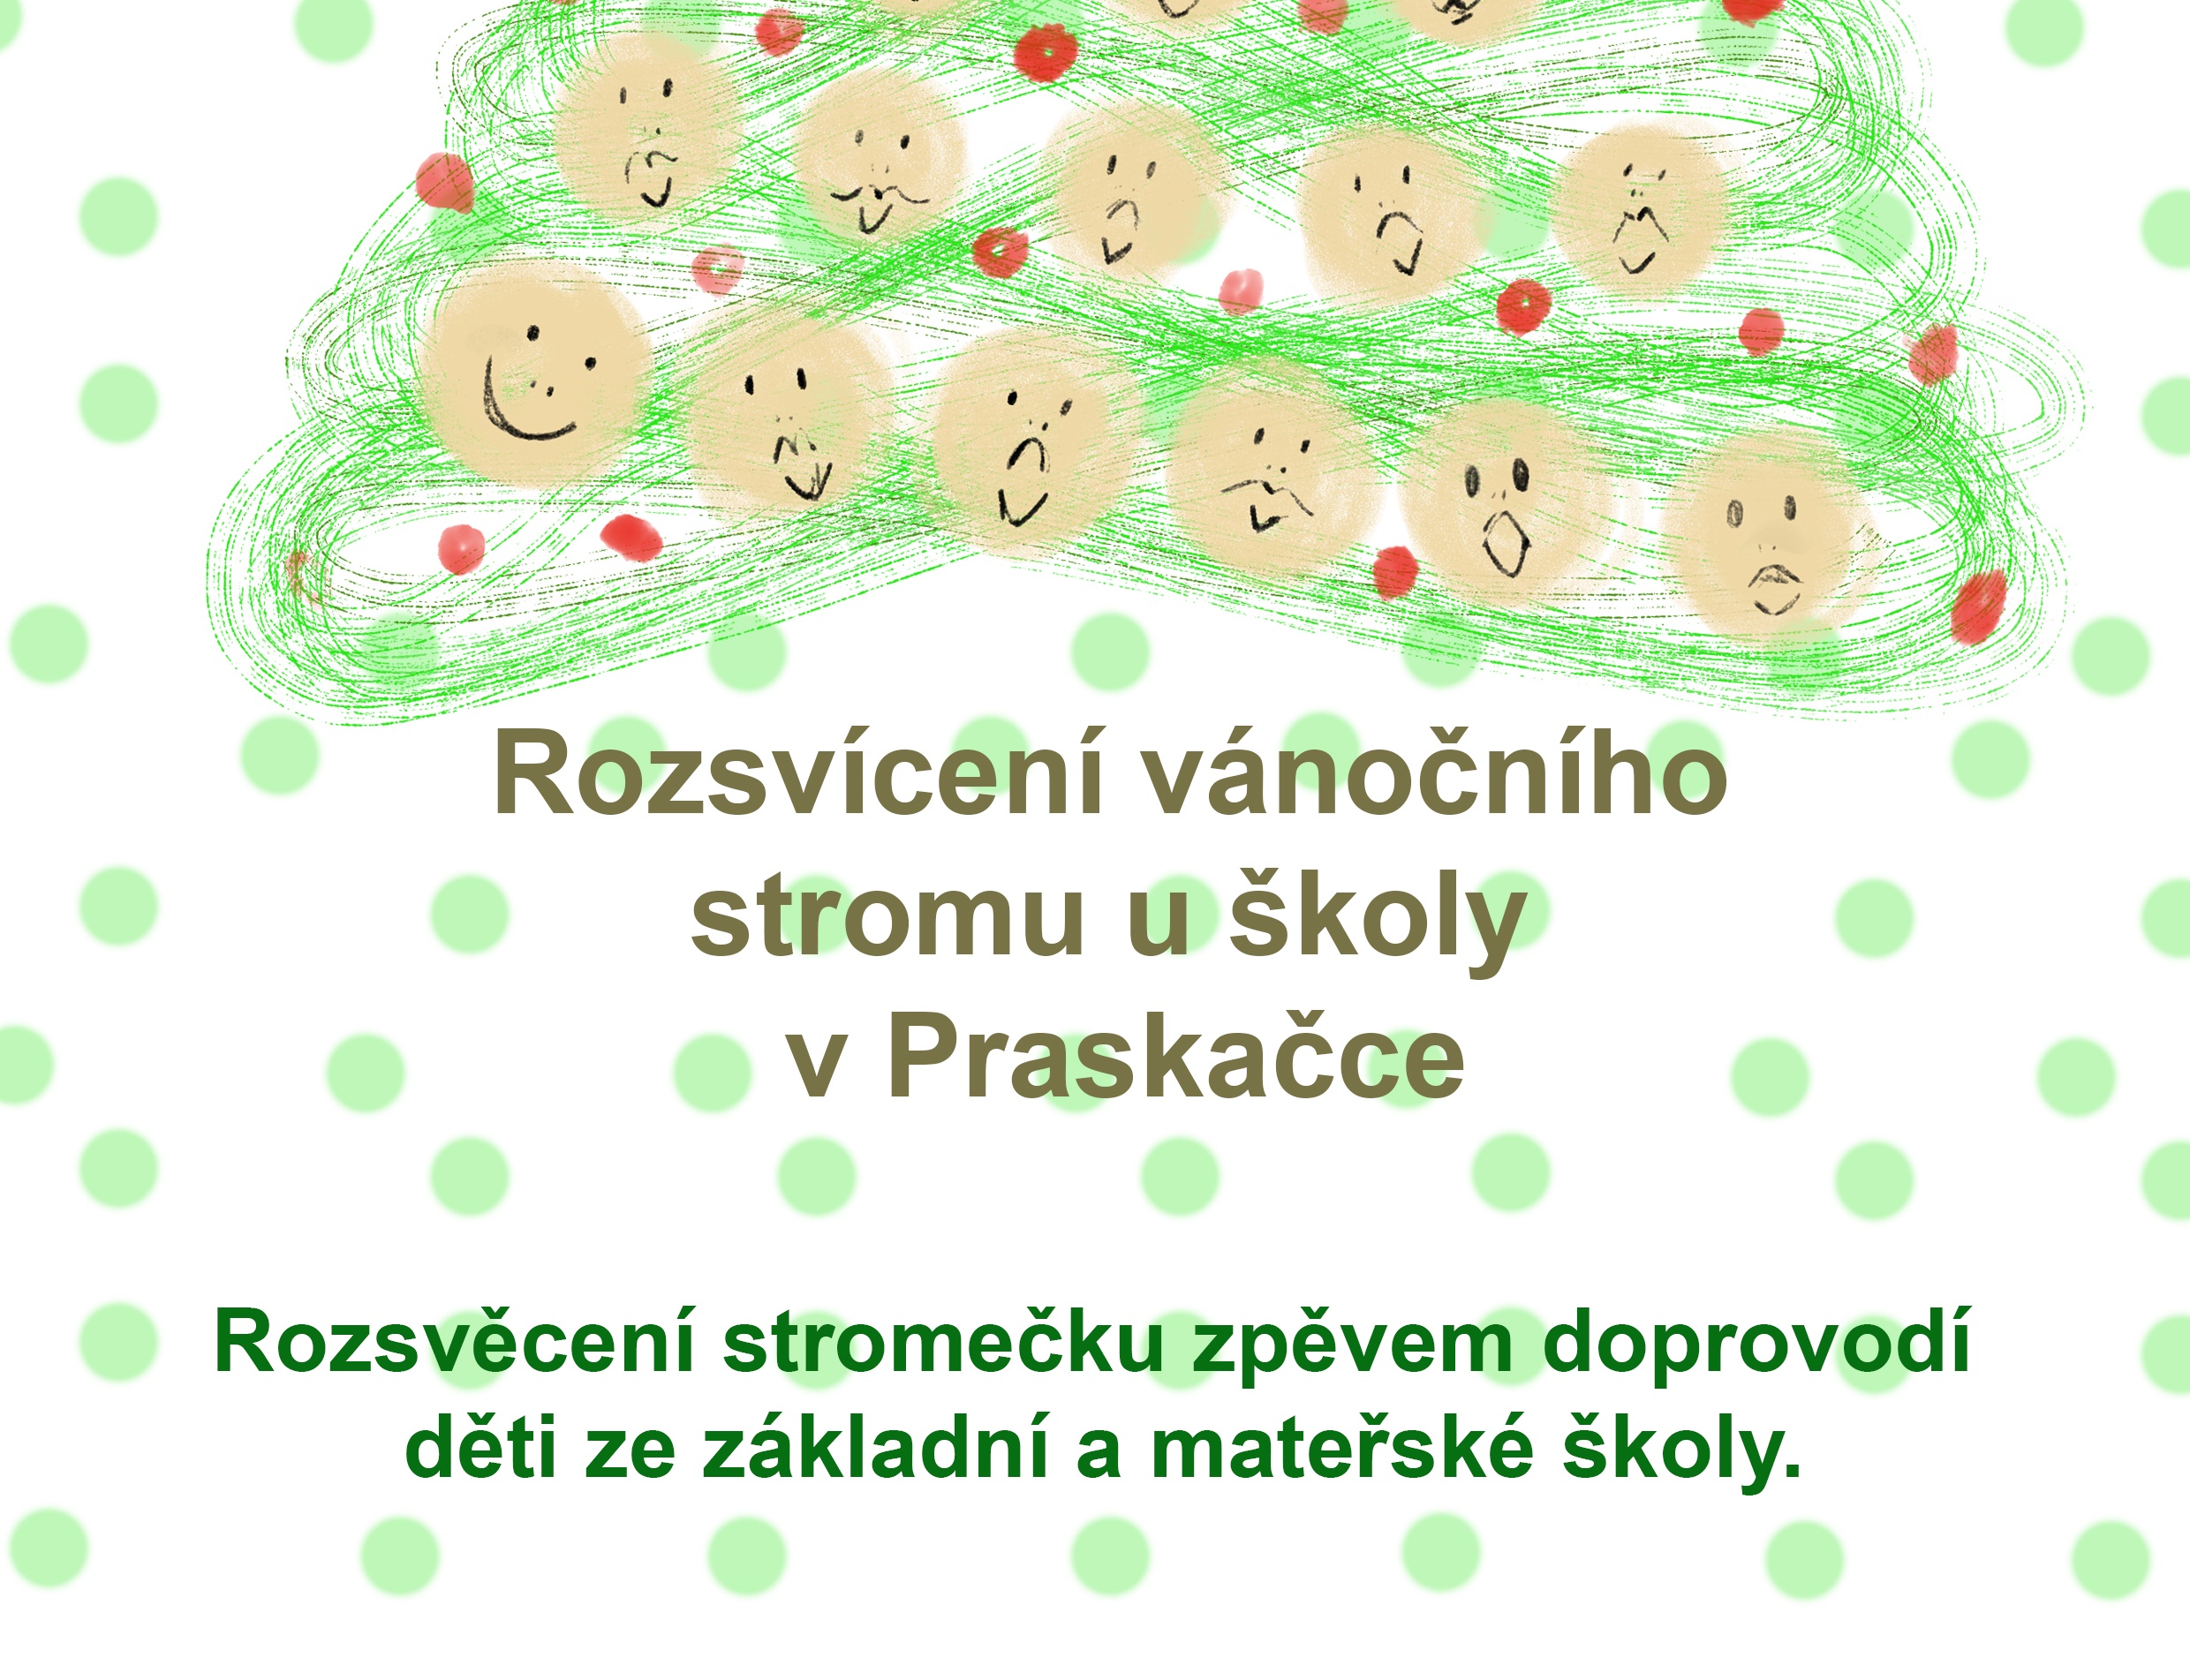 Přečtete si více ze článku Rozsvícení vánočního stromu u školy v Praskačce